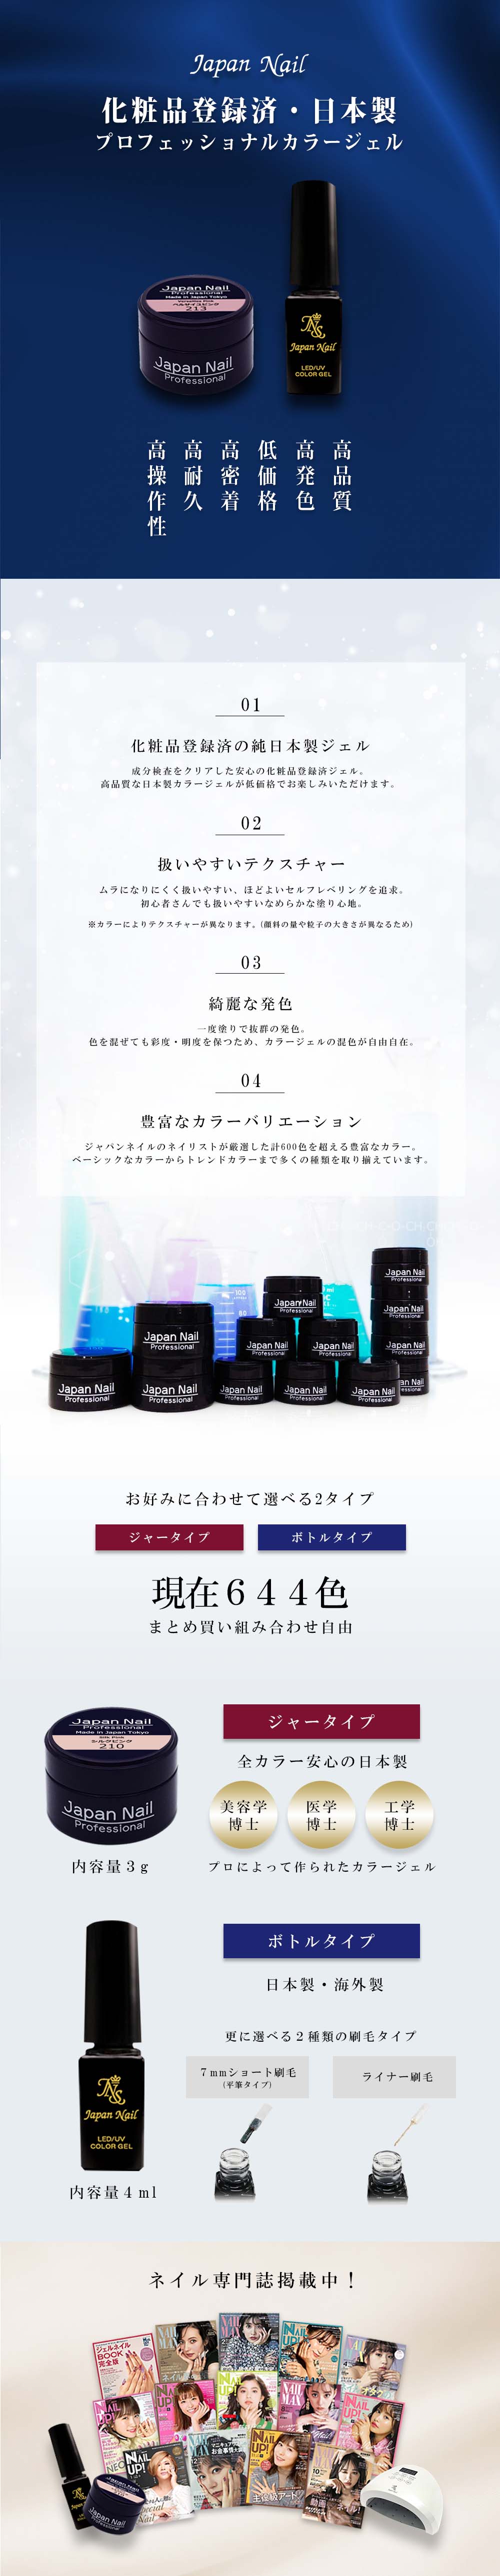 安心の日本製カラージェル ジャータイプ ボトルタイプ 現在644色 LEDUV対応 化粧品登録済 | ジェルネイル,カラージェル | ジェルネイル 通販のジャパンネイル公式サイト